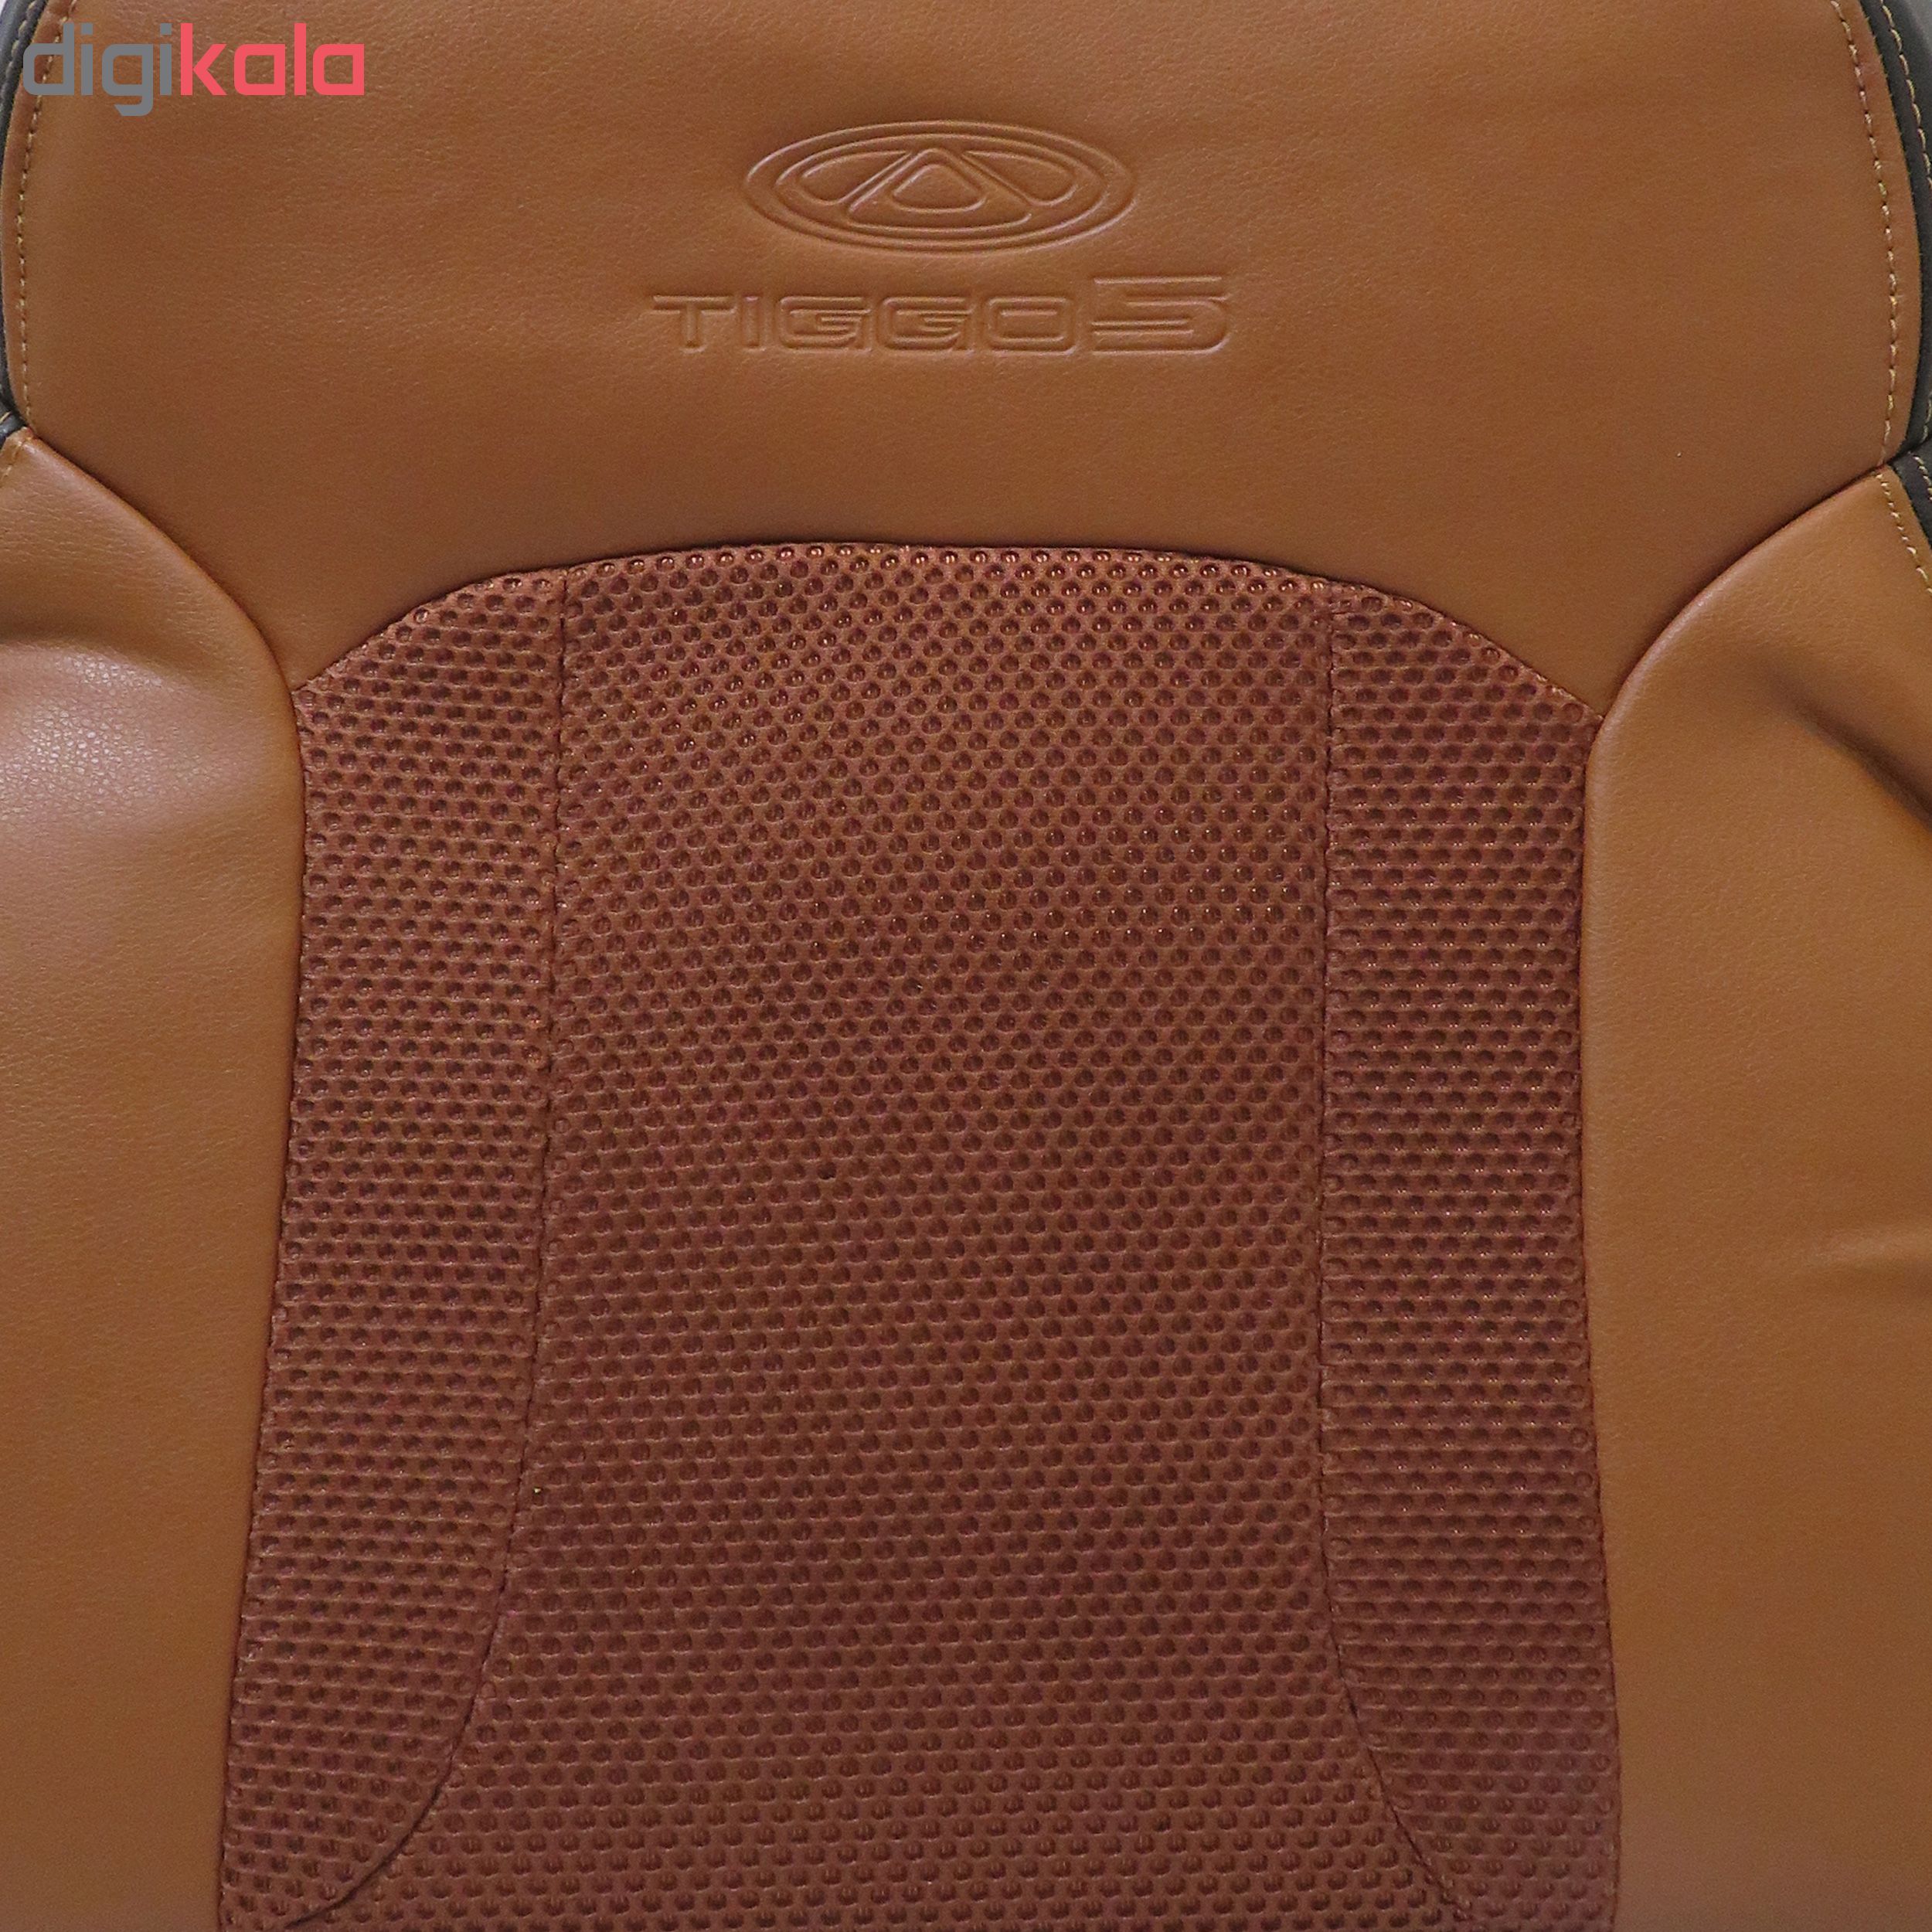 روکش صندلی خودرو مدل tg02 مناسب برای تیگو 5